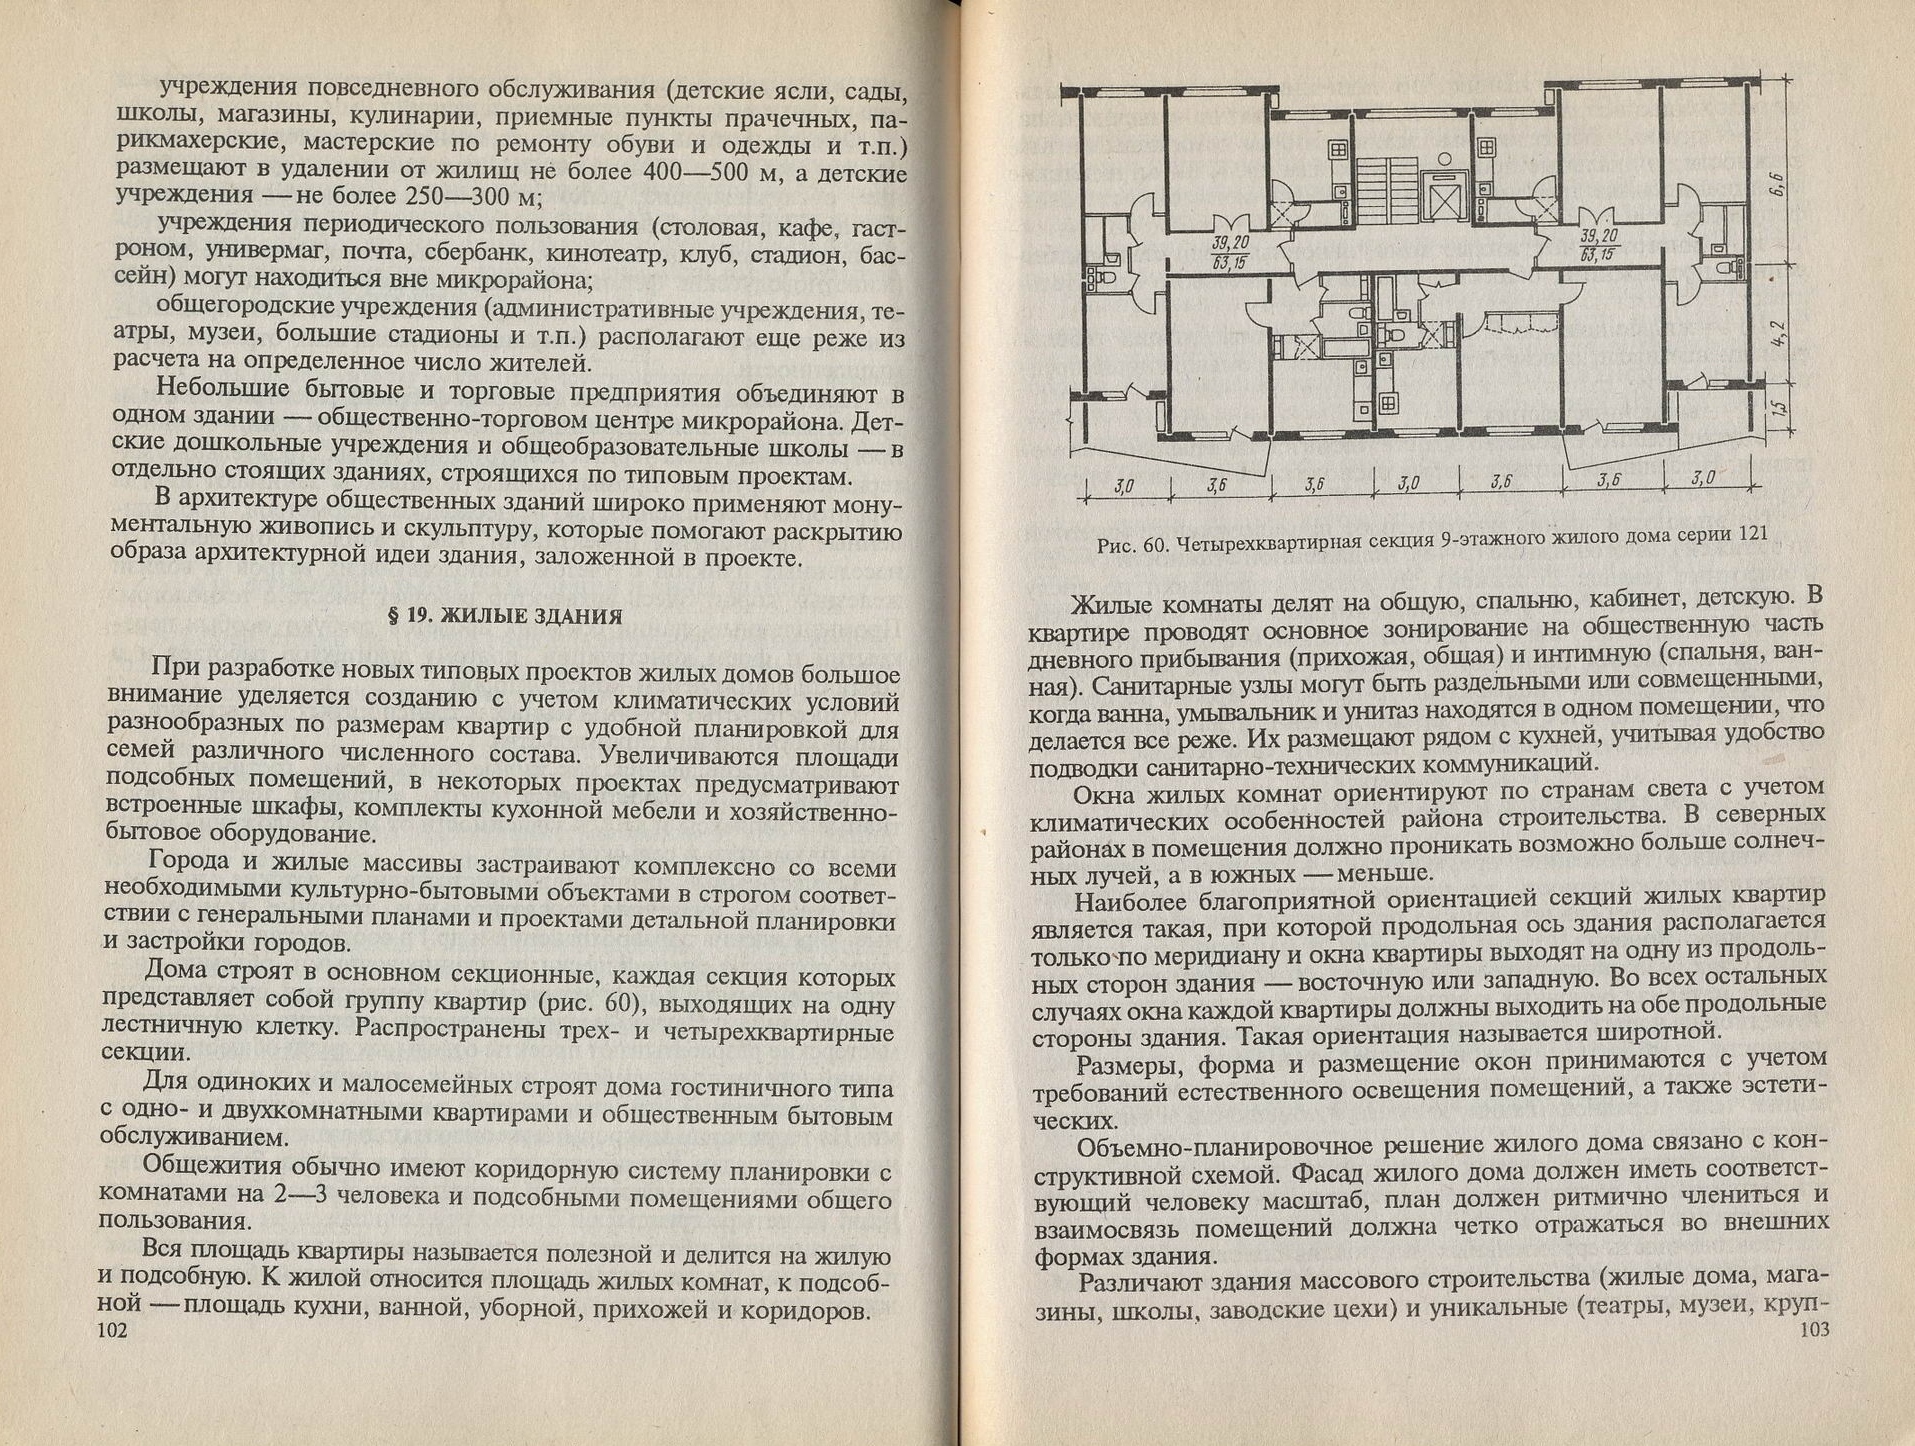 Основы архитектуры / Т. Л. Кильпе. — 3-е издание, переработанное и дополненное. — Высшая школа, 2002